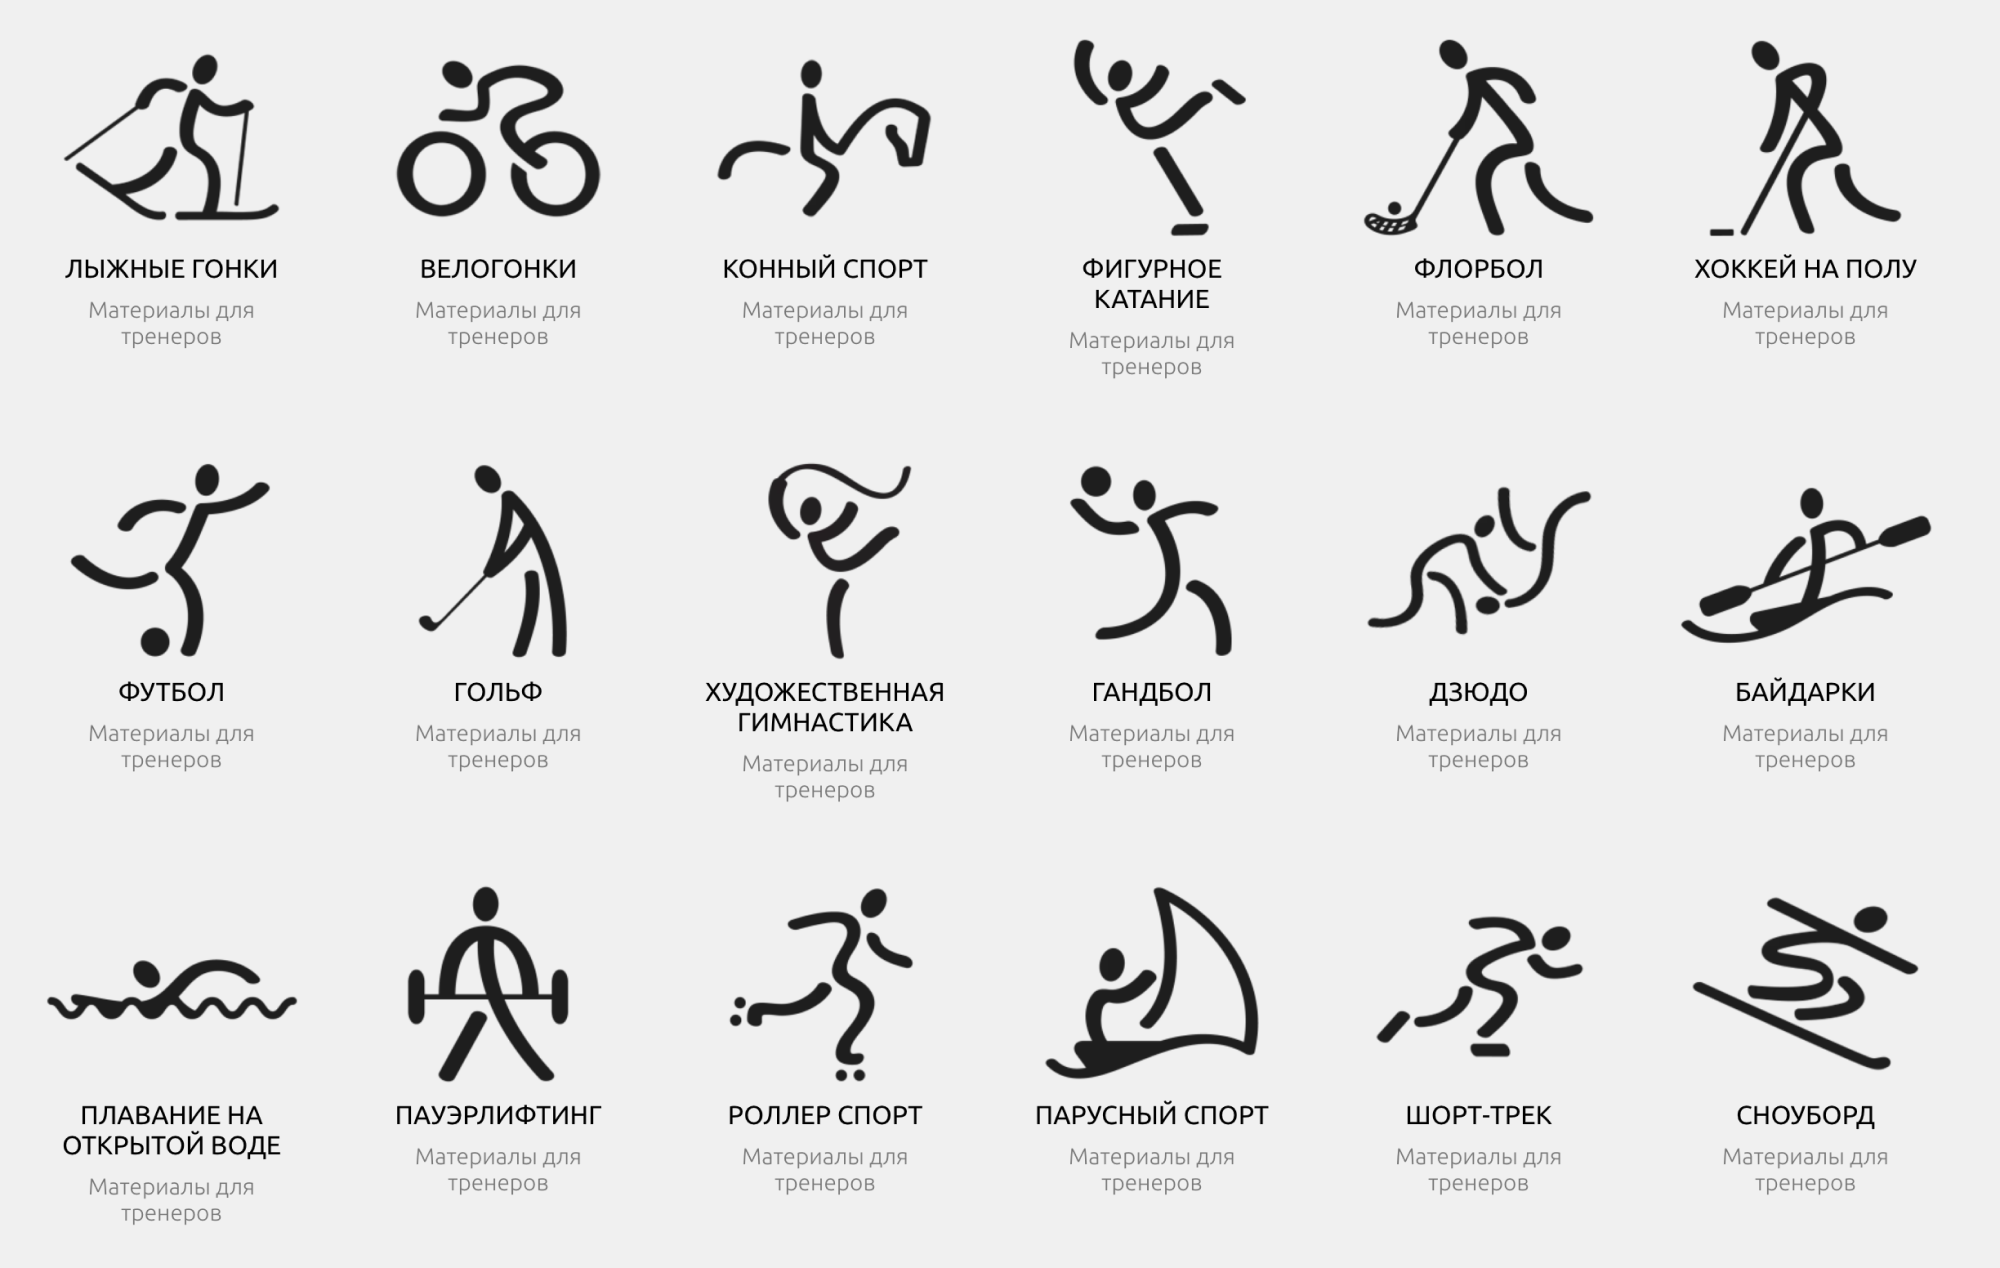 Это только часть адаптивных видов спорта. Источник: specialolympics.ru